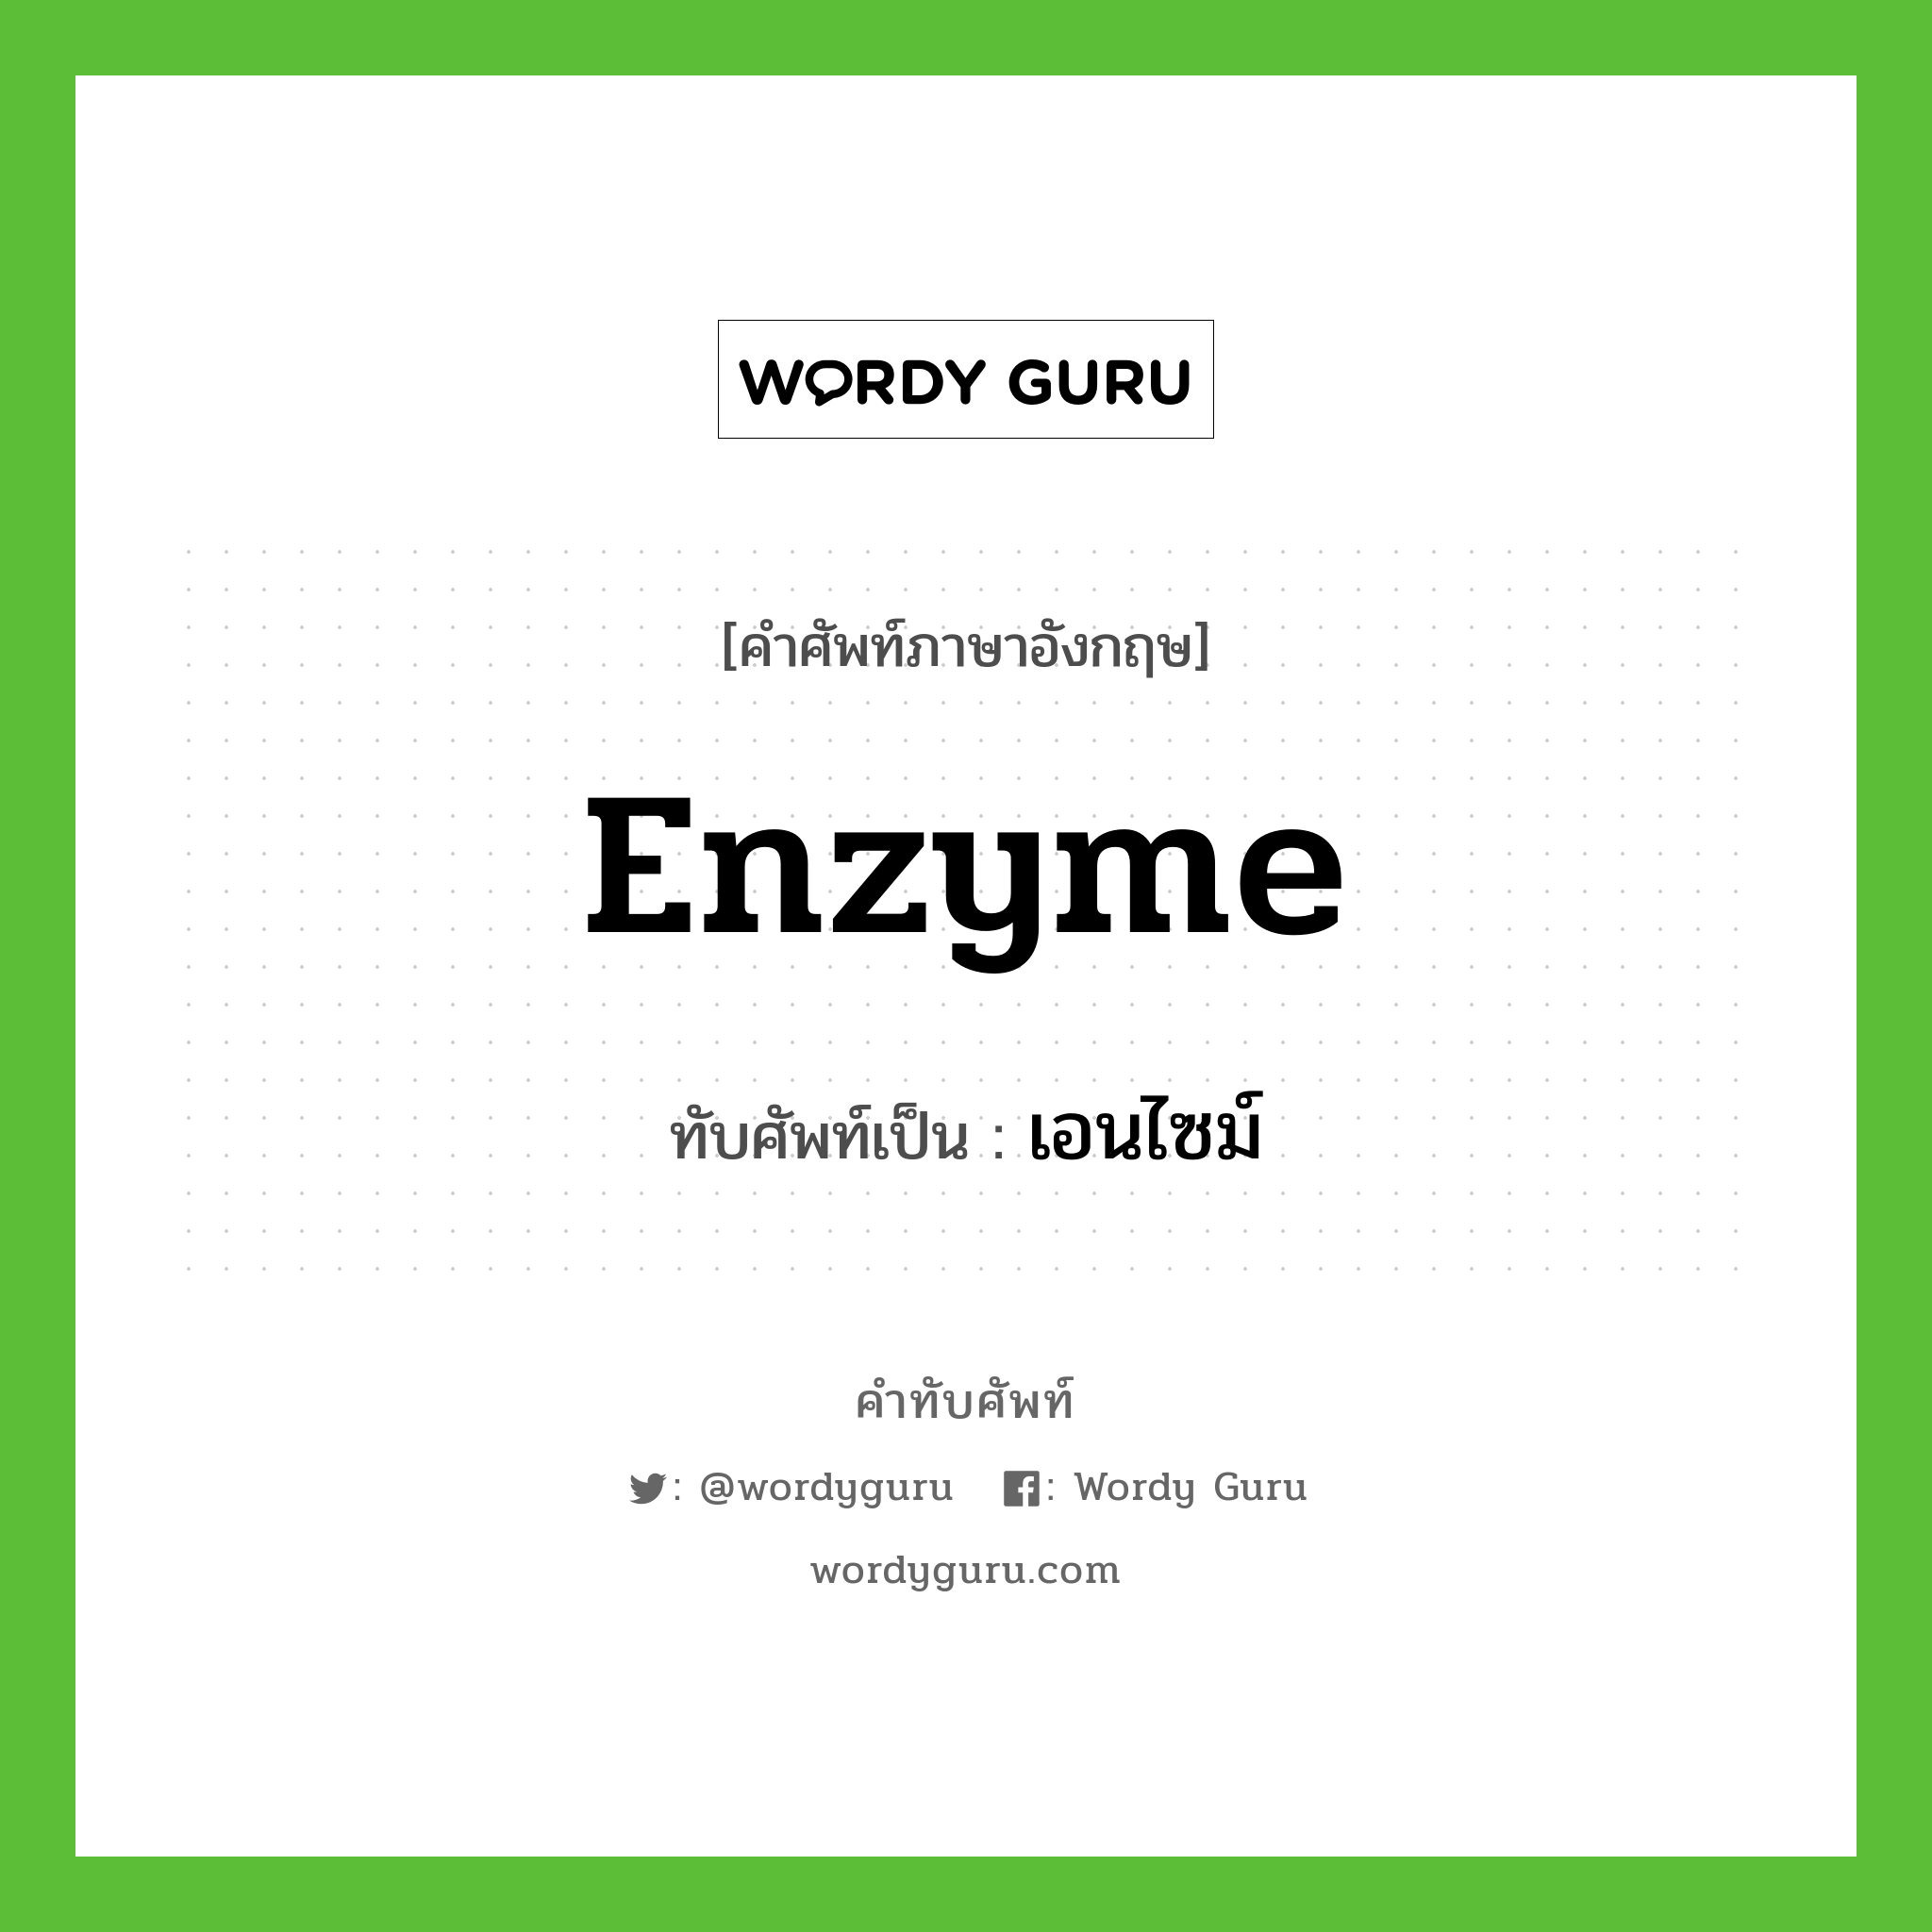 enzyme เขียนเป็นคำไทยว่าอะไร?, คำศัพท์ภาษาอังกฤษ enzyme ทับศัพท์เป็น เอนไซม์